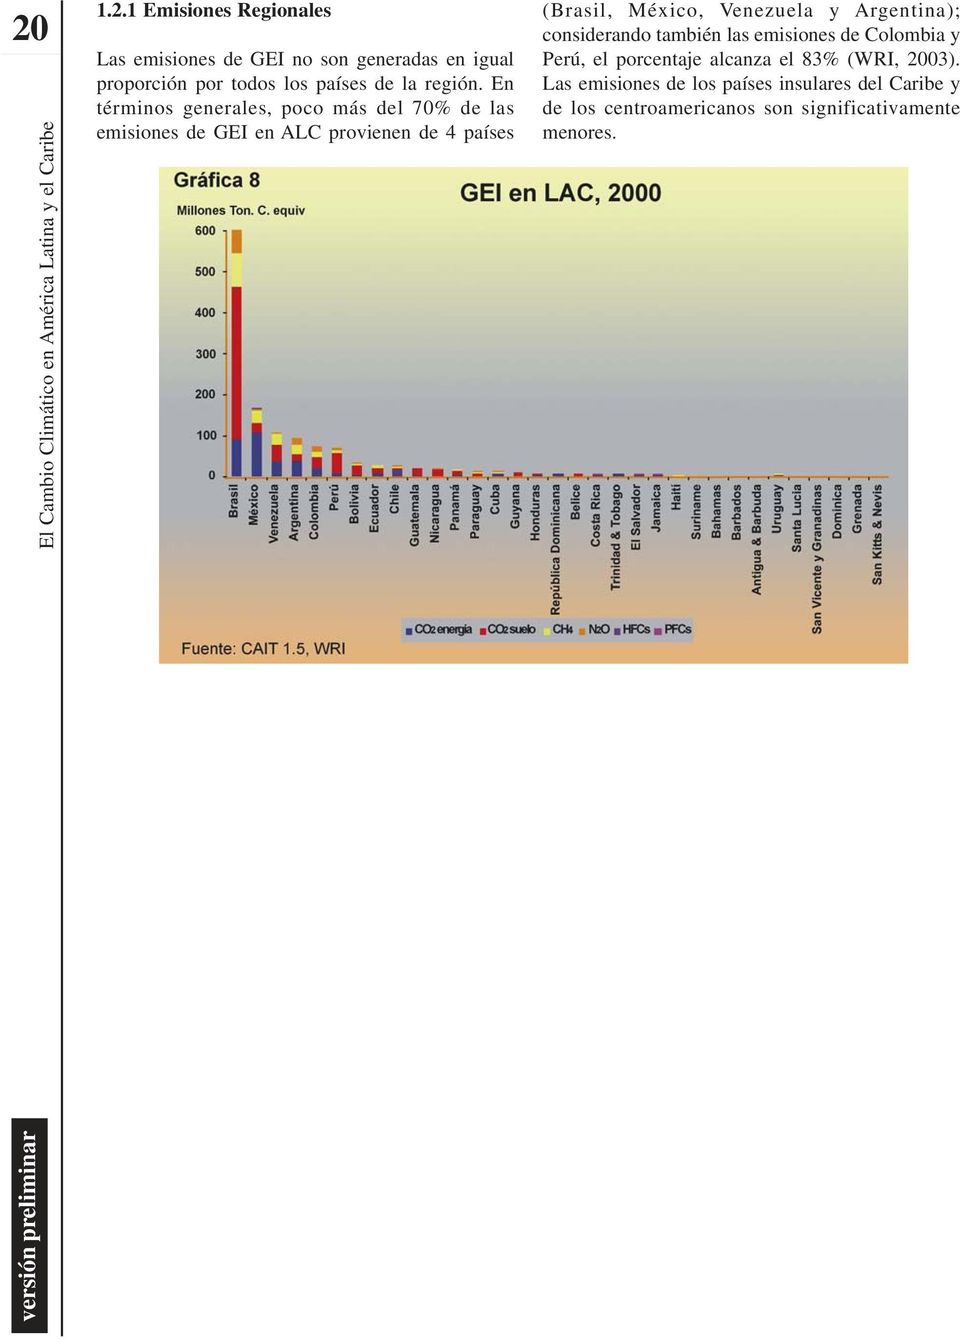 En términos generales, poco más del 70% de las emisiones de GEI en ALC provienen de 4 países (Brasil, México,